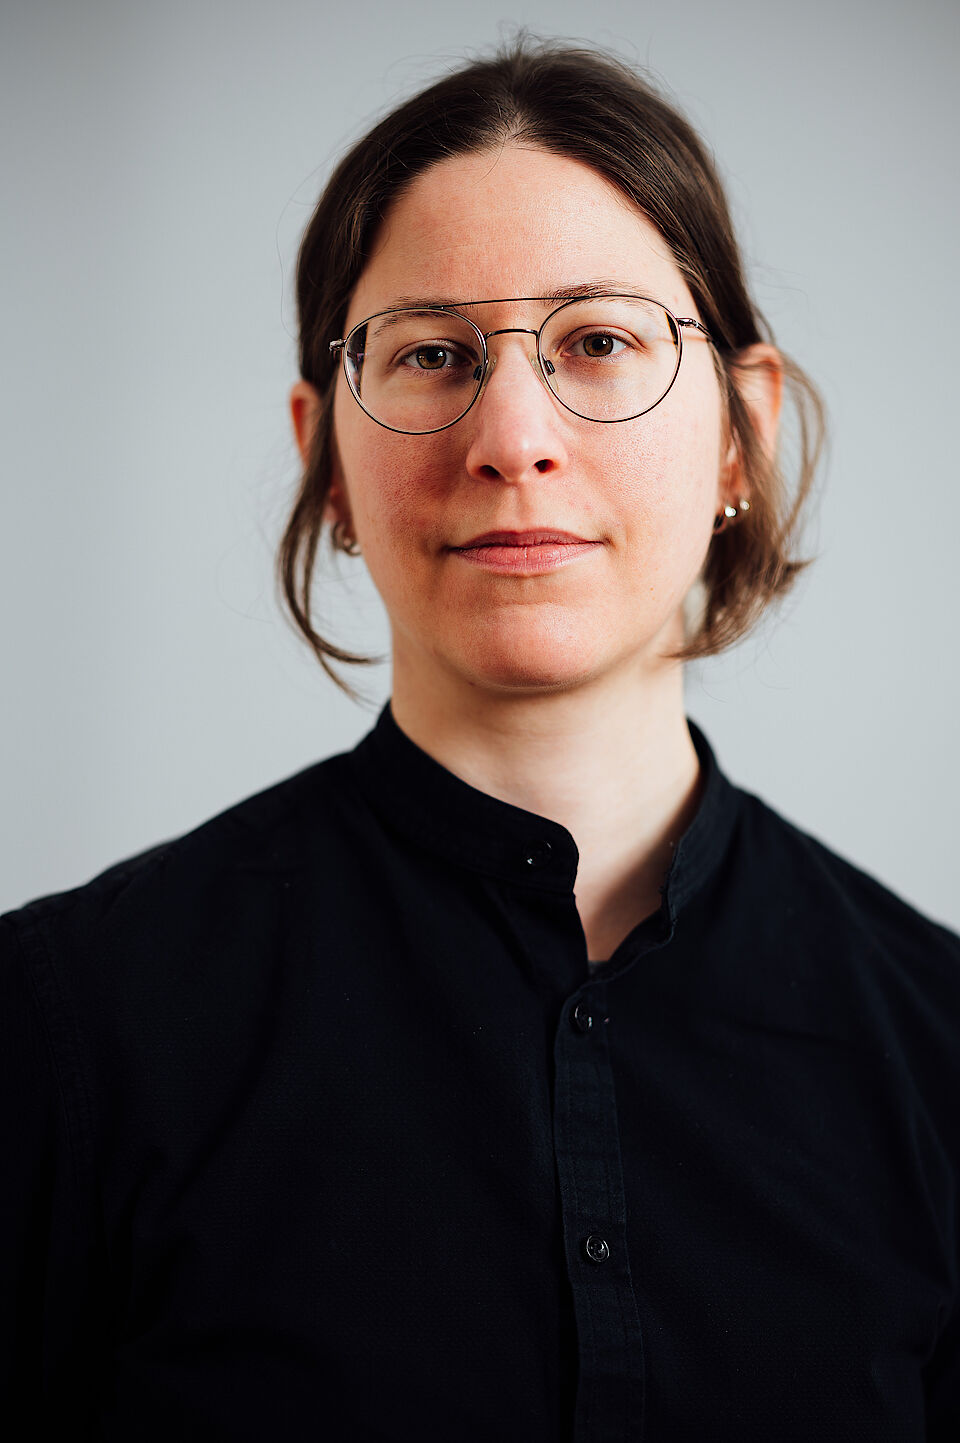 Portrait von Lavinia Pflugfelder: eine junge Frau mit Brille und halblangen dunkeln Haaren und schwarzem Hemd